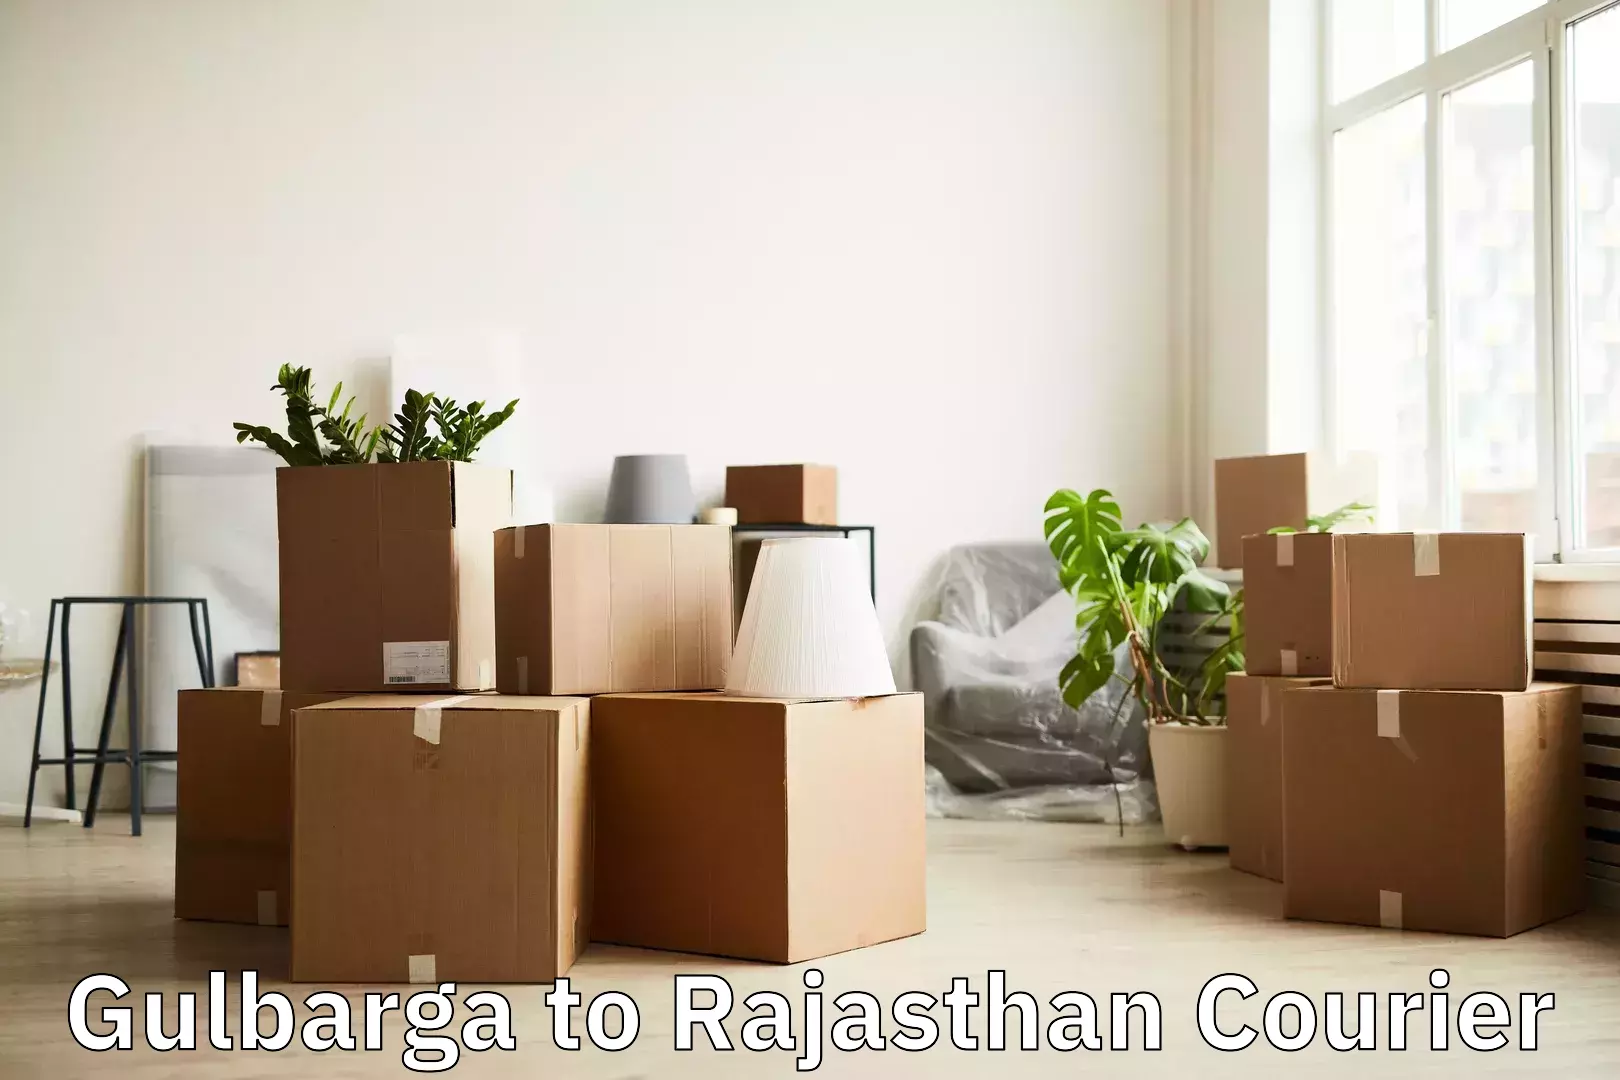 Luggage transport consulting Gulbarga to Rajasthan